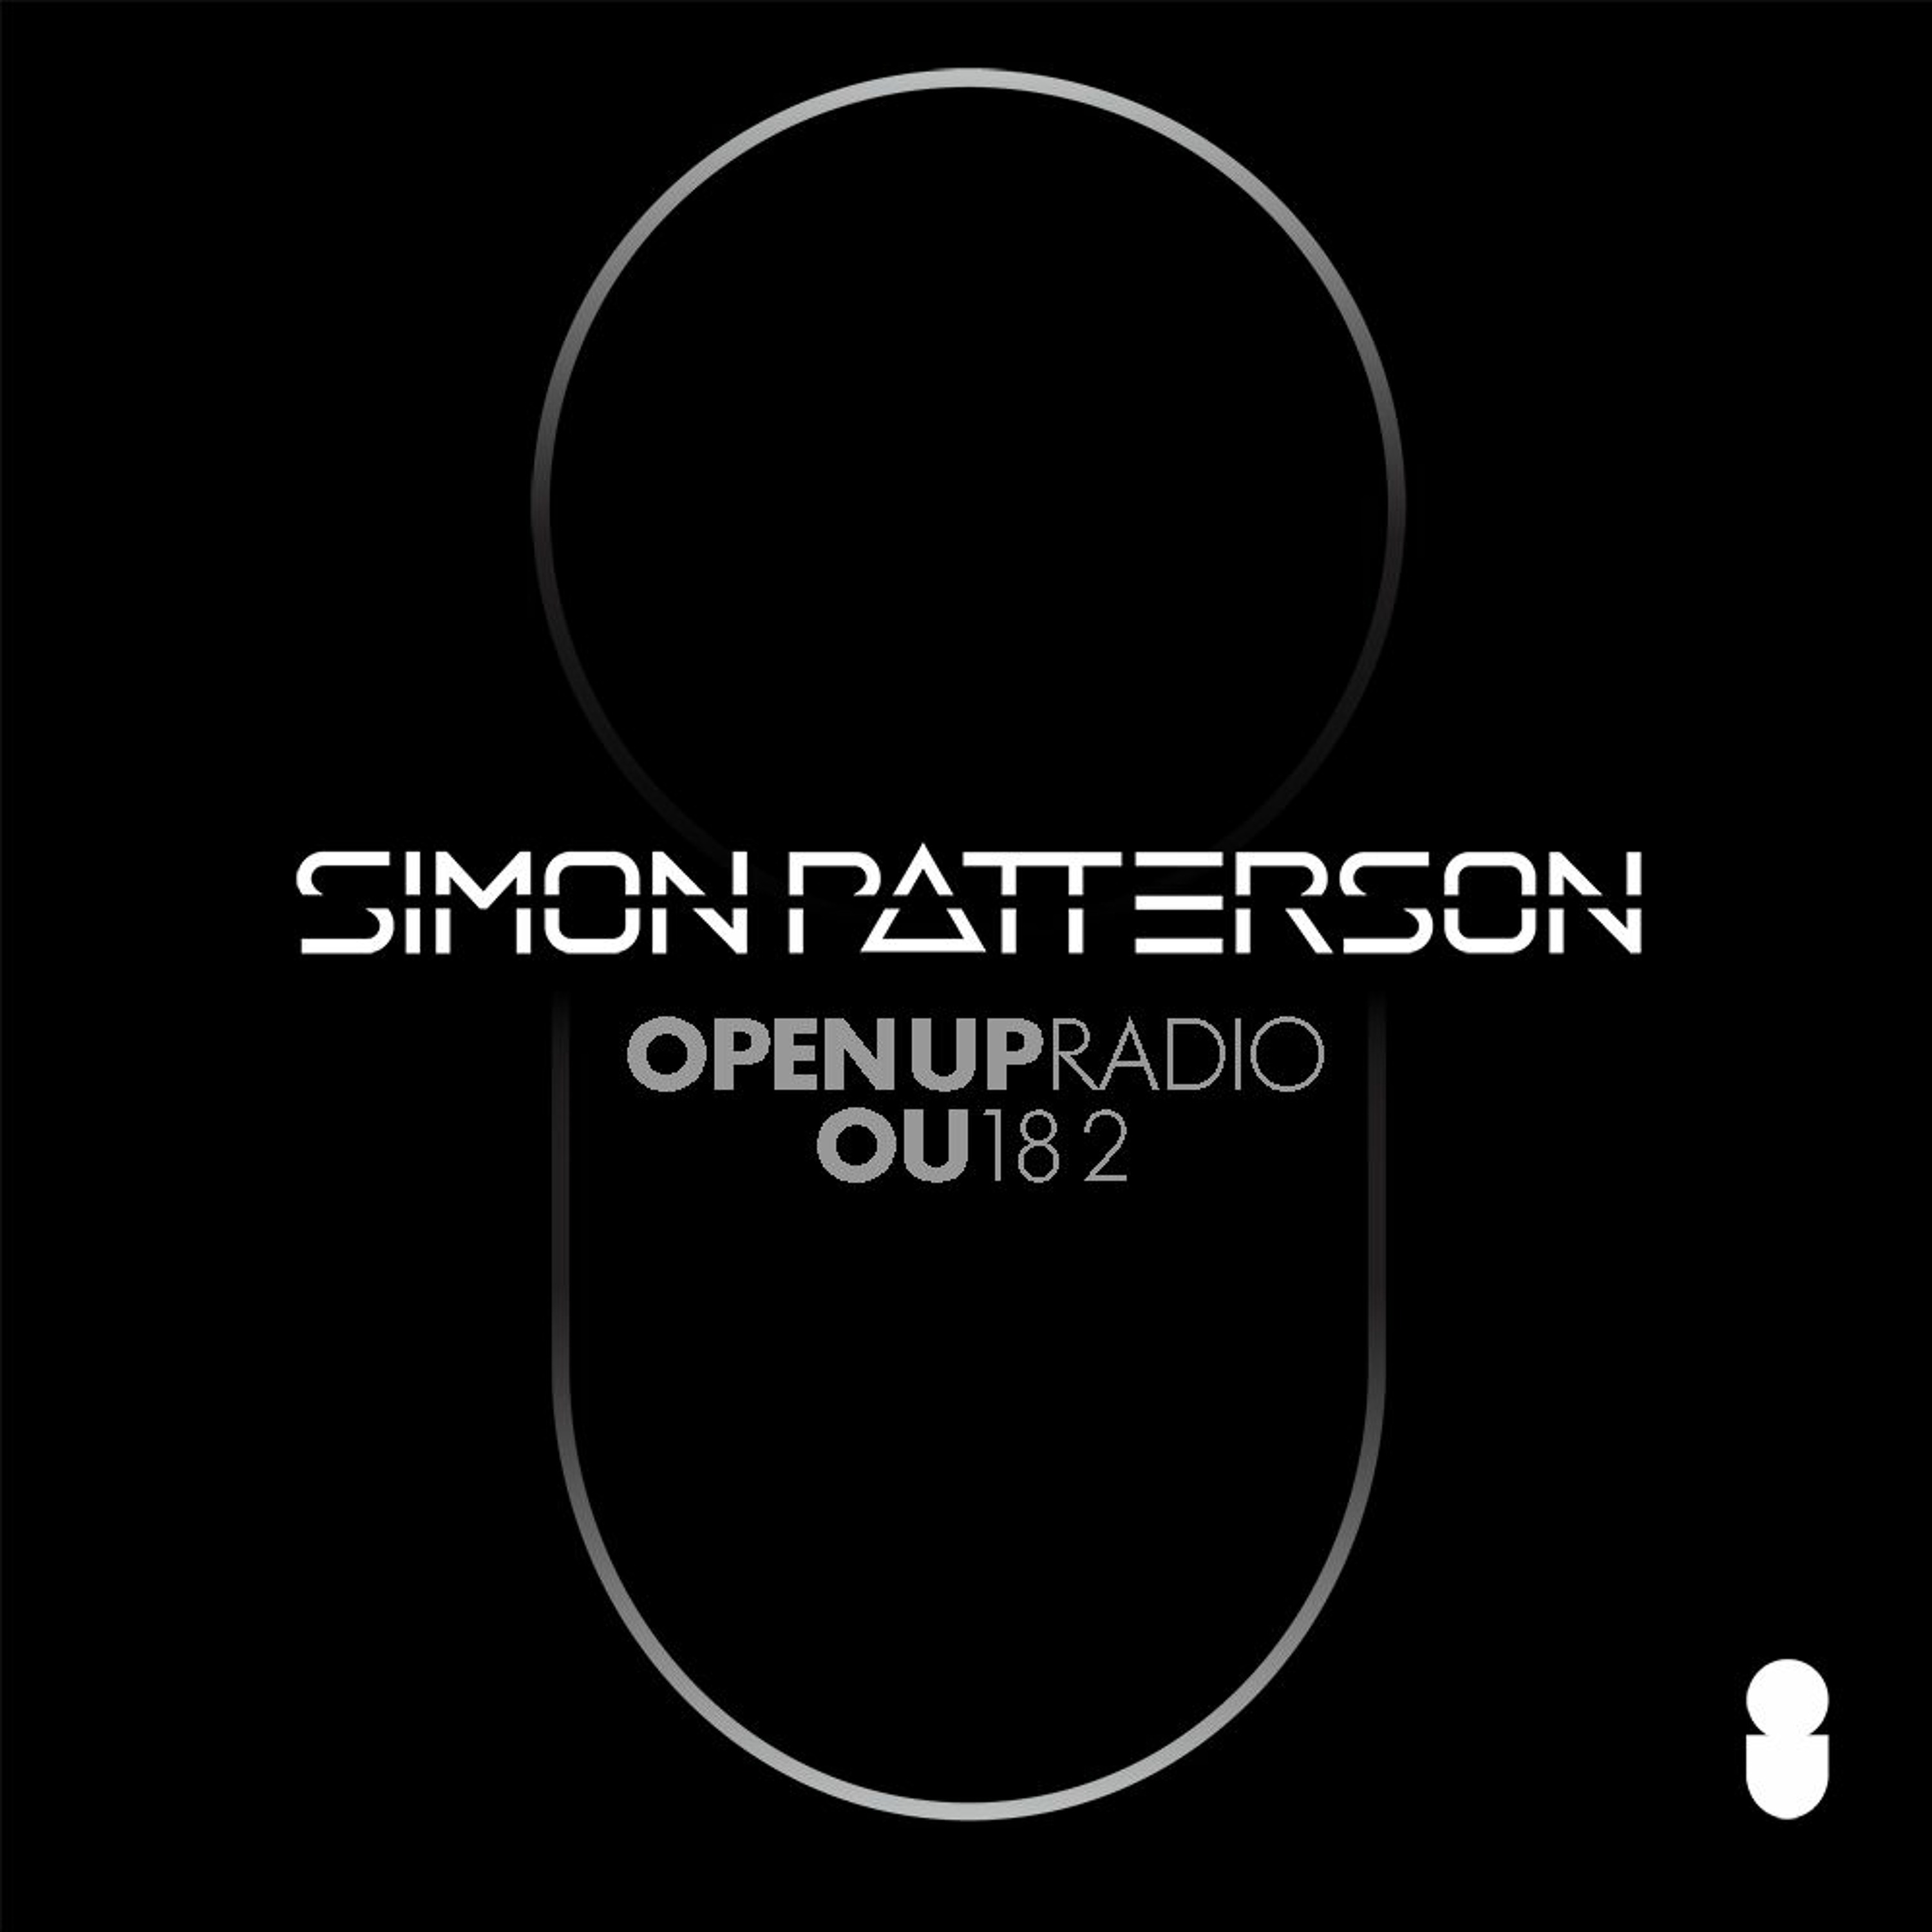 Simon Patterson - Open Up - 182